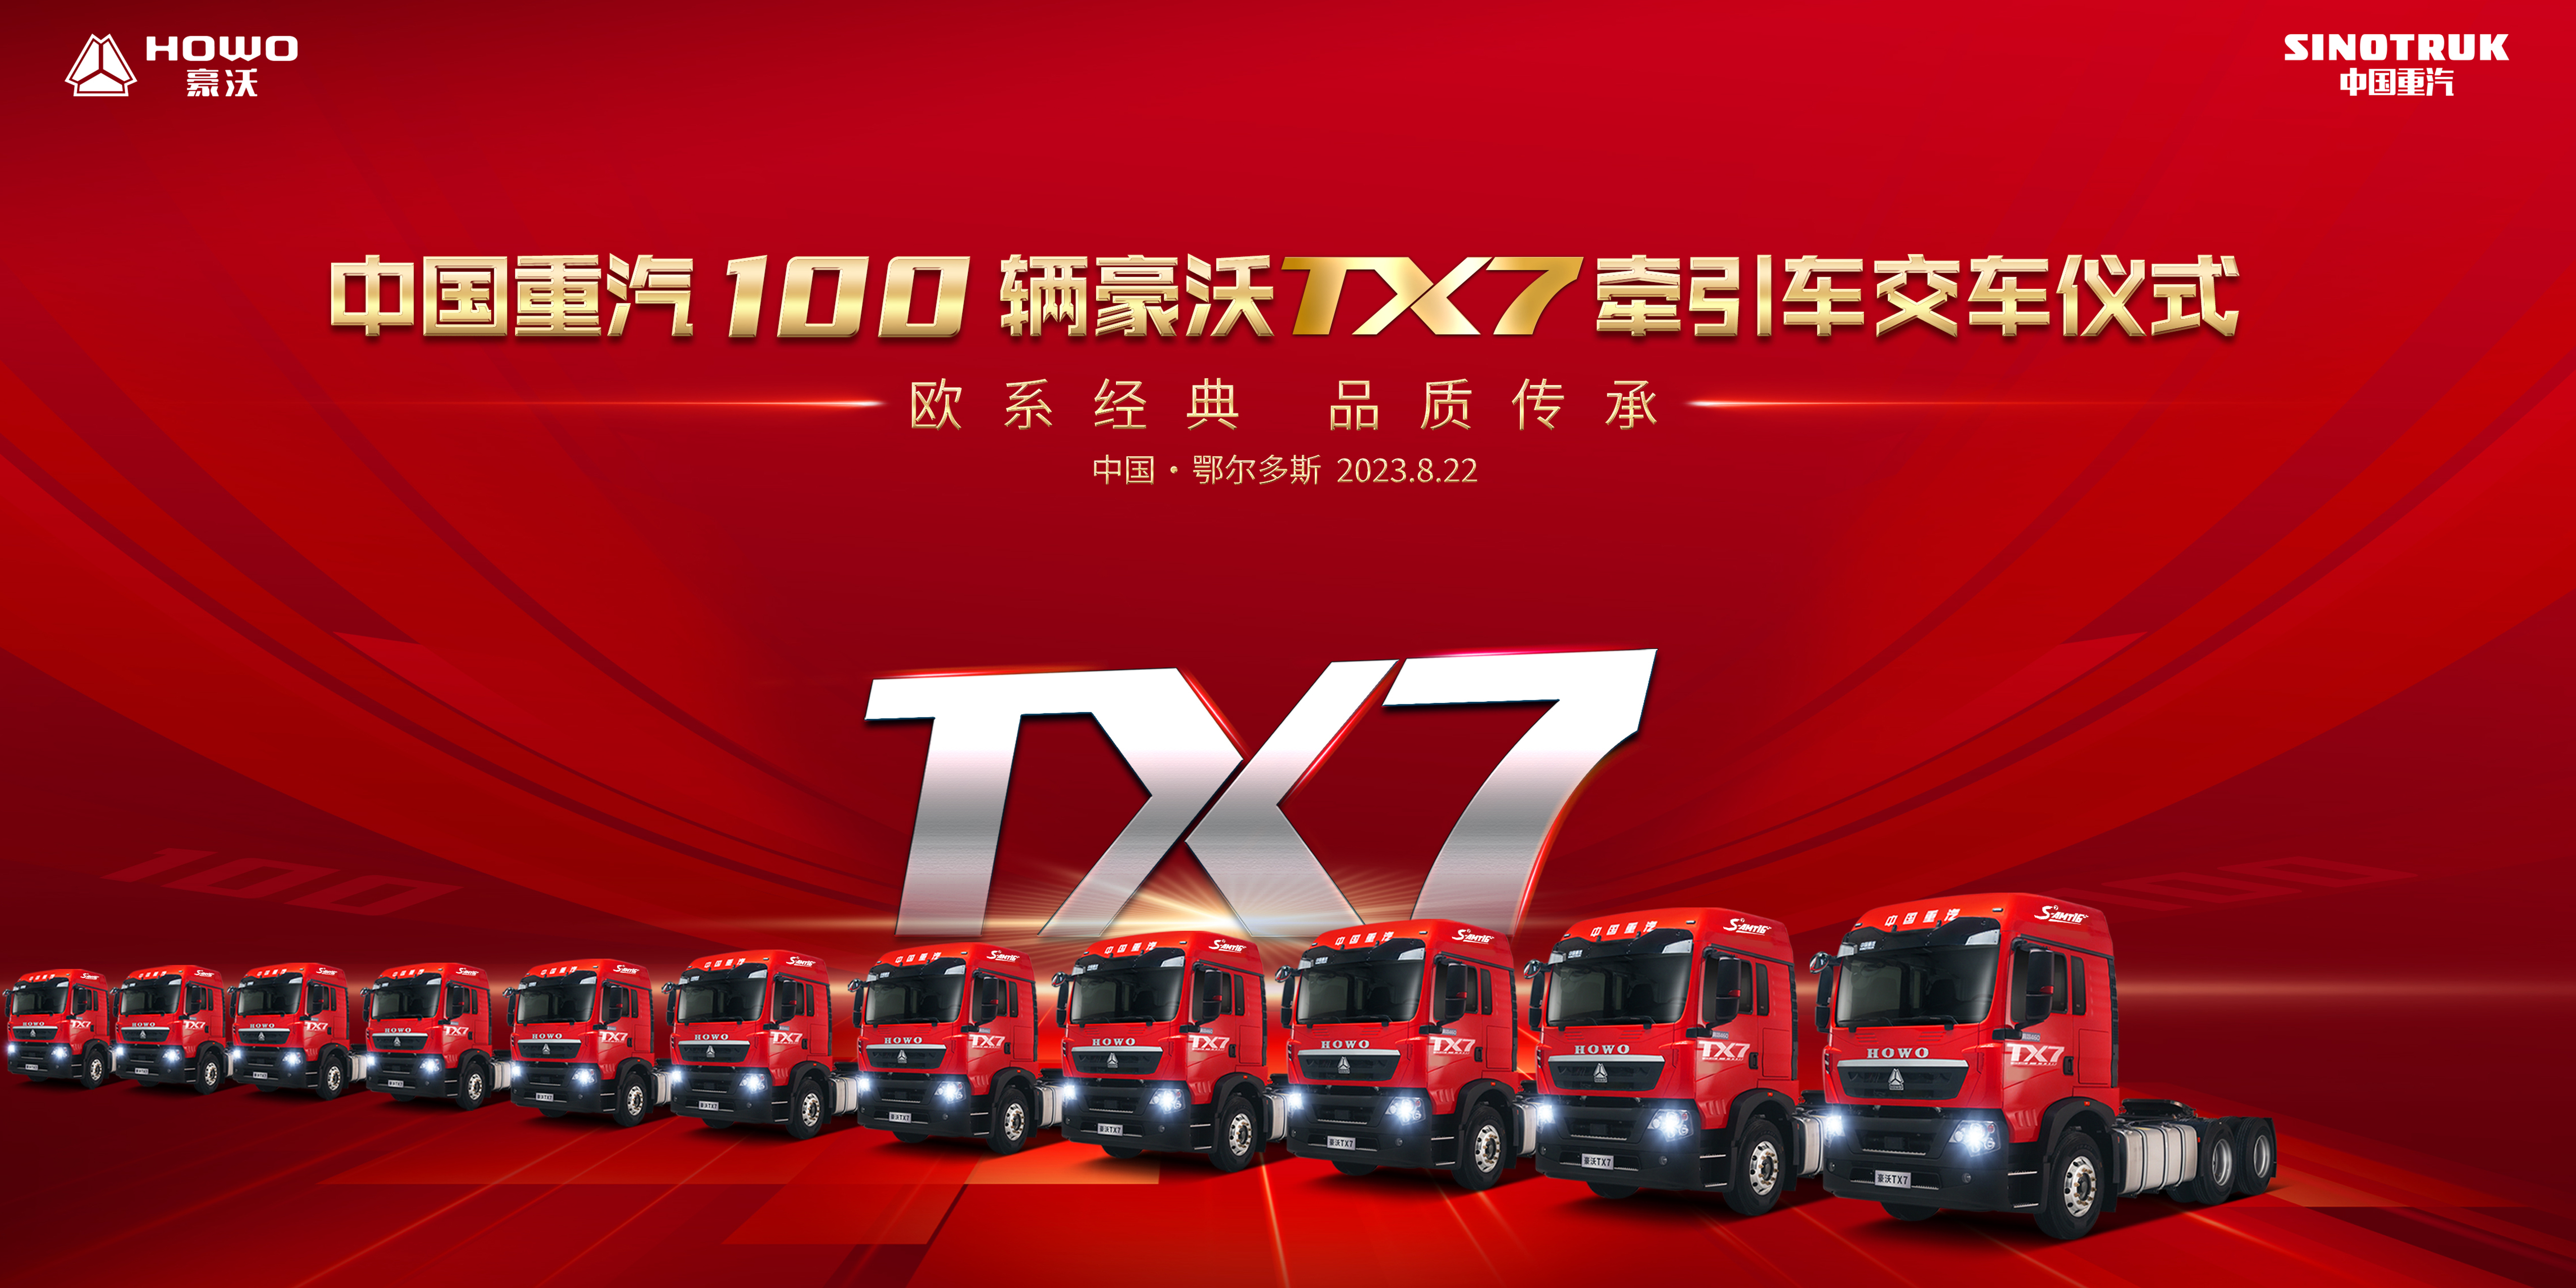 【铁臂直播】欧系经典 品质传承——中国重汽100辆豪沃TX7牵引车交车仪式